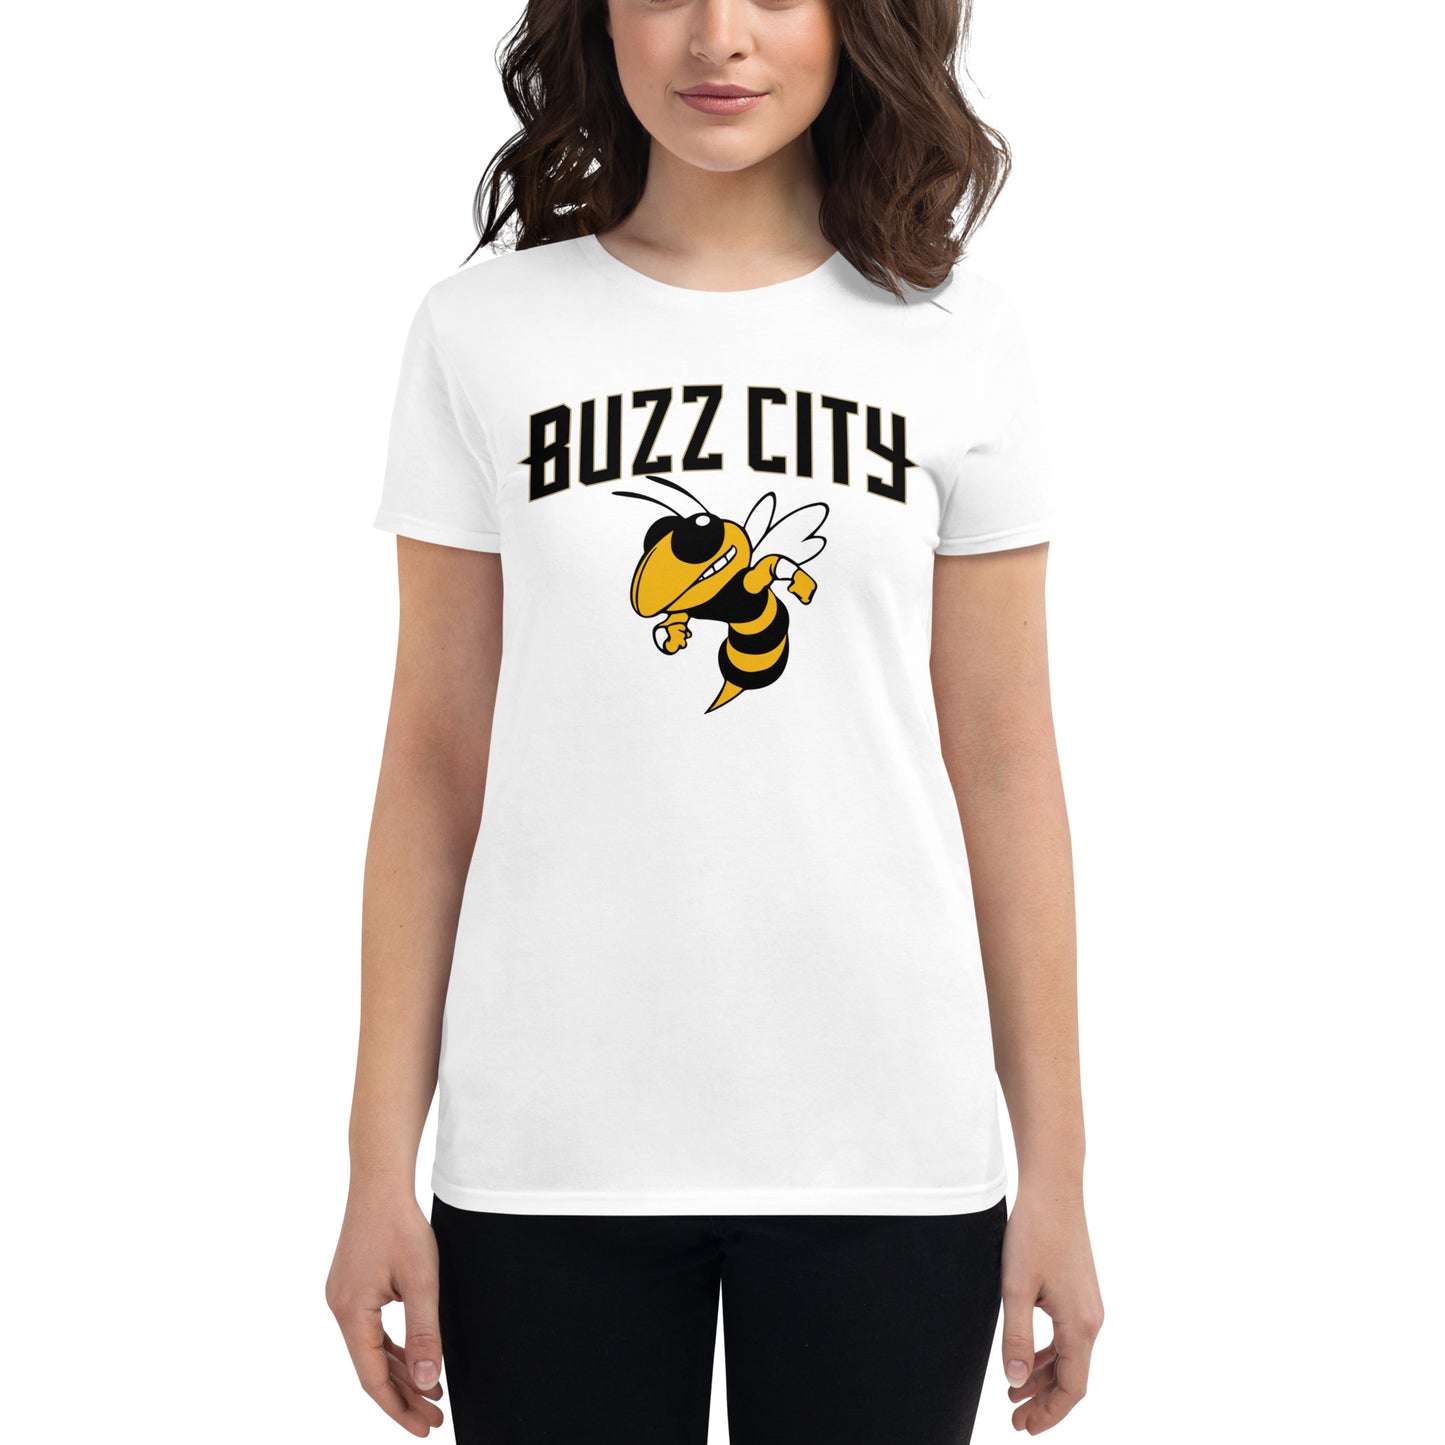 Women's Buzz City t-shirt